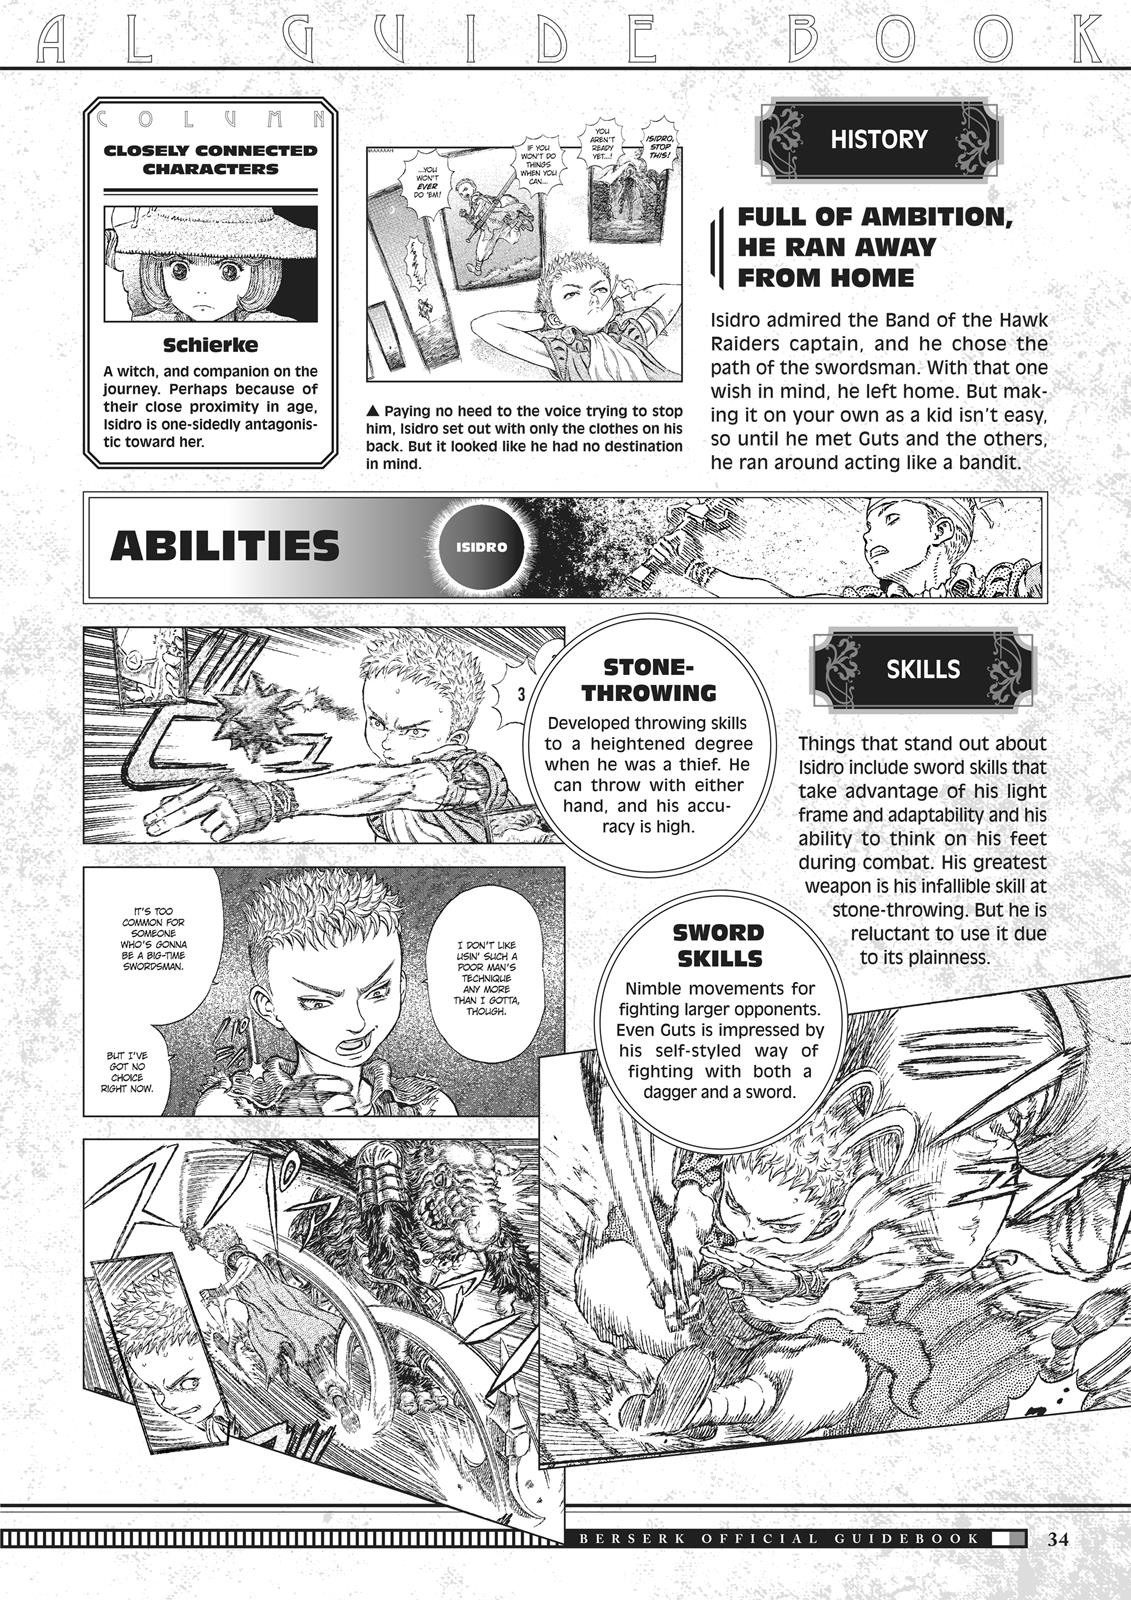 Berserk Manga Chapter 350.5 image 034